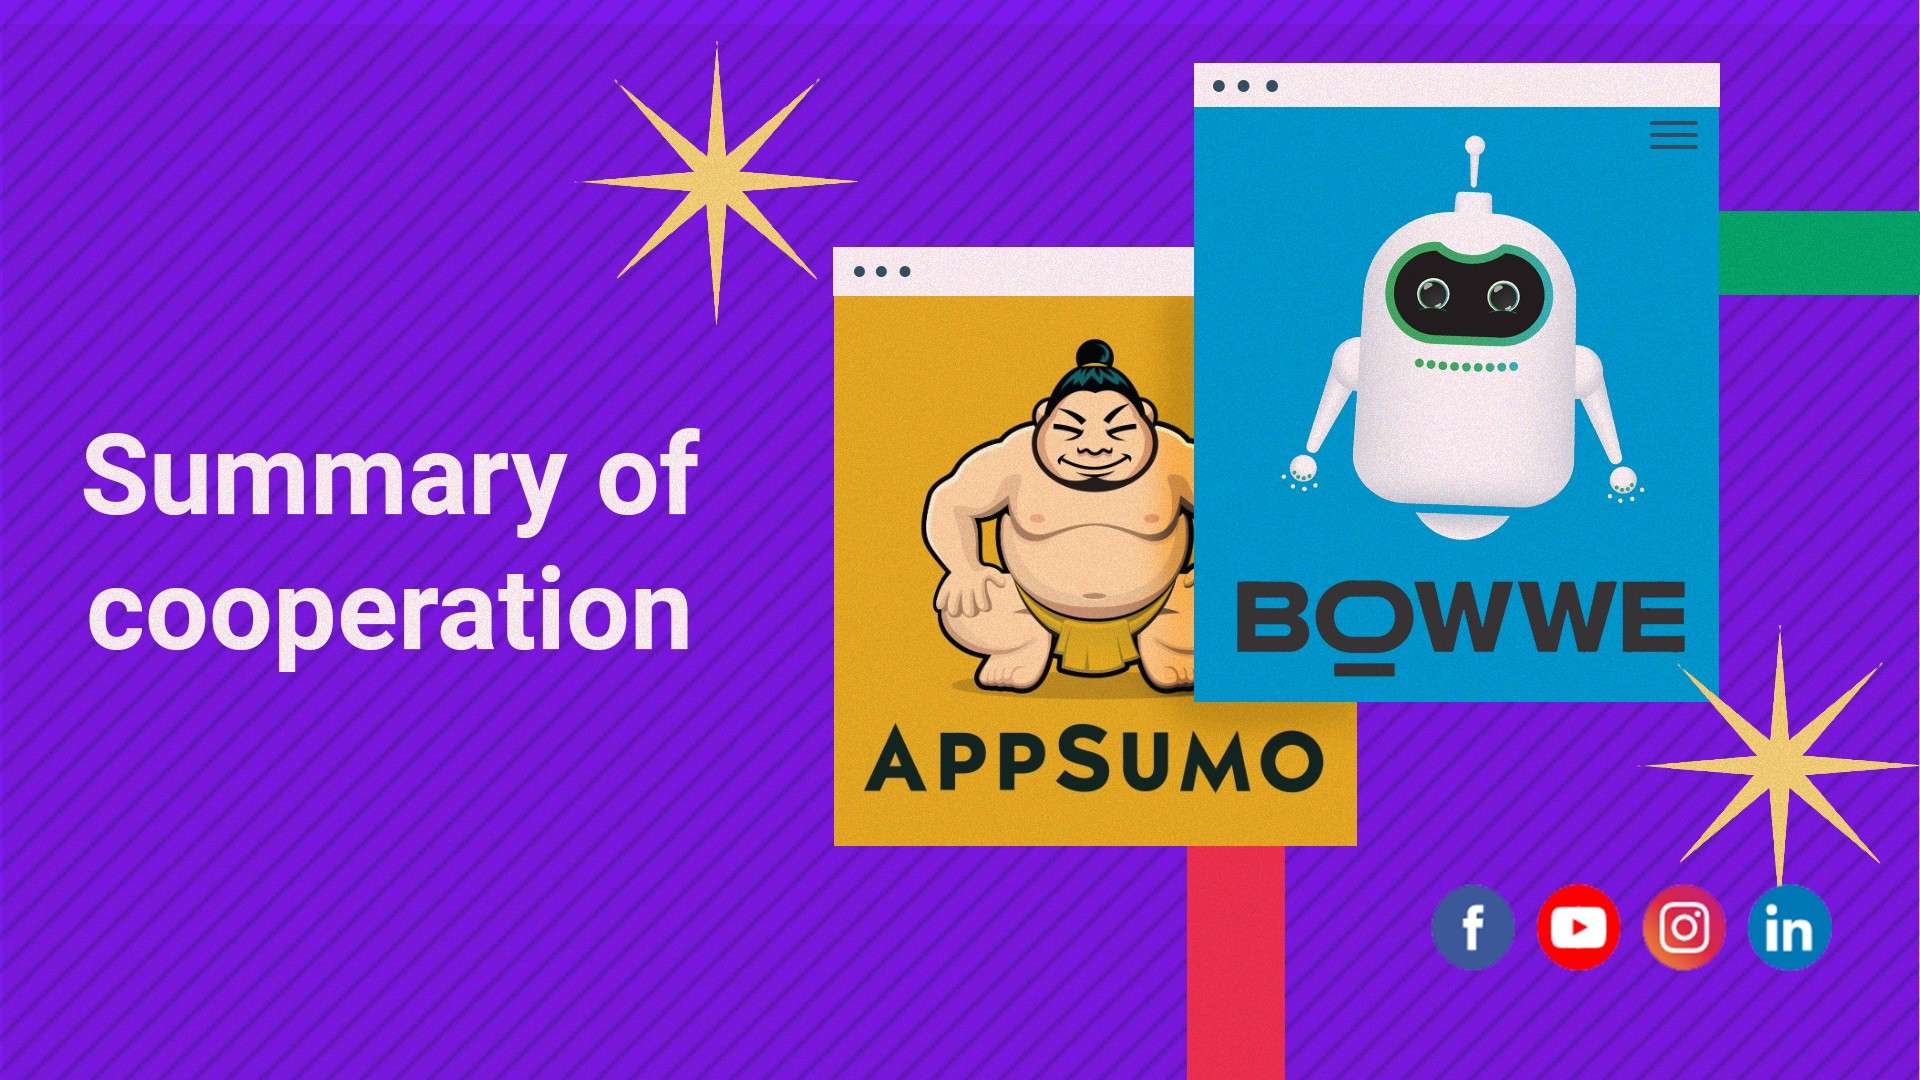 Wie wurde BOWWE zum besten Entwickler auf Appsumo? [Fallstudie]